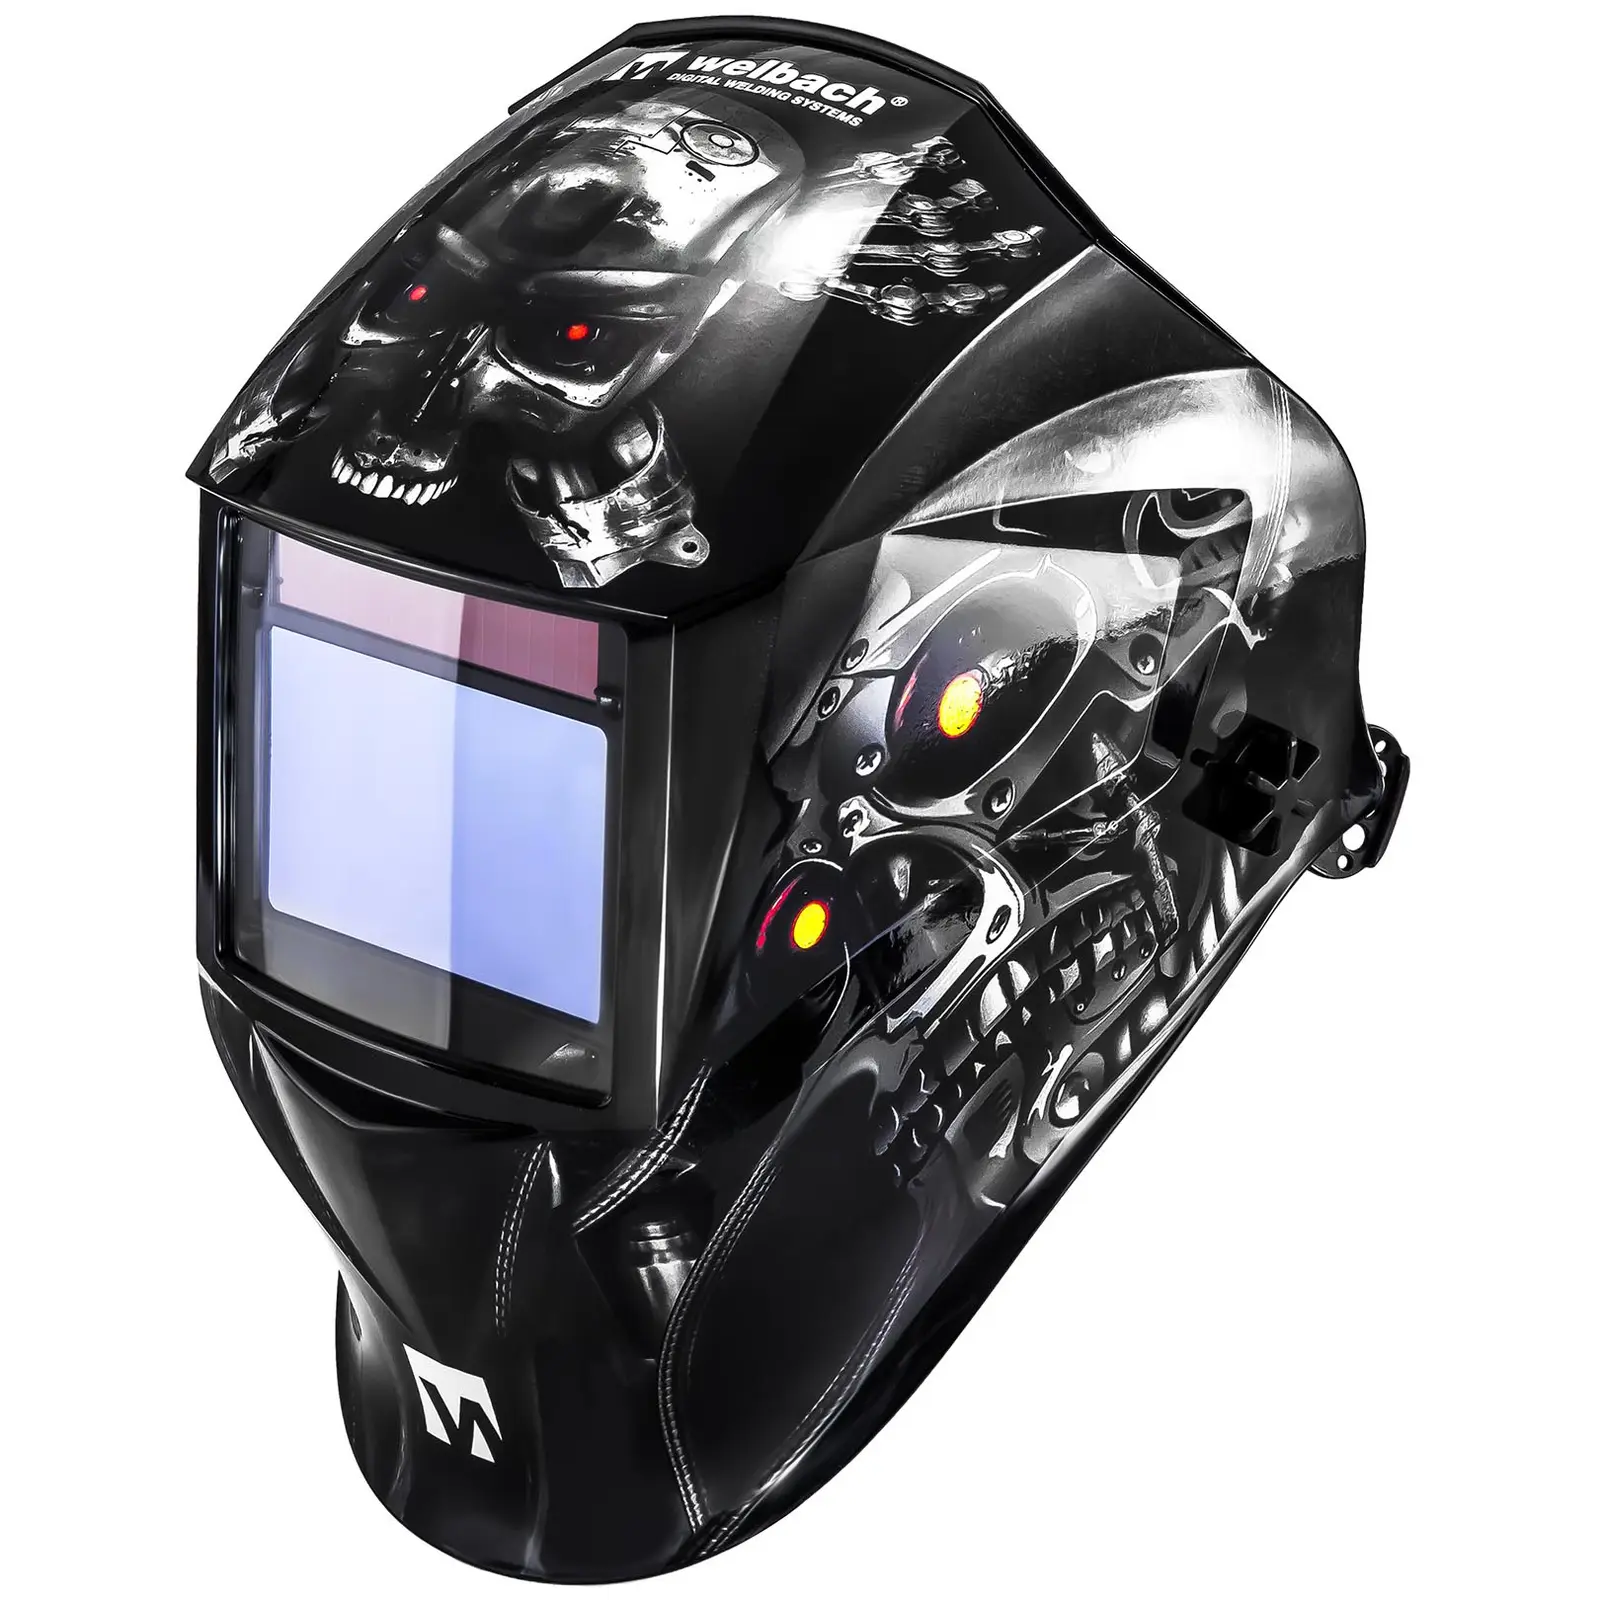 TIG Welder Set - 200 A - IGBT + welding helmet METALATOR + welding gloves